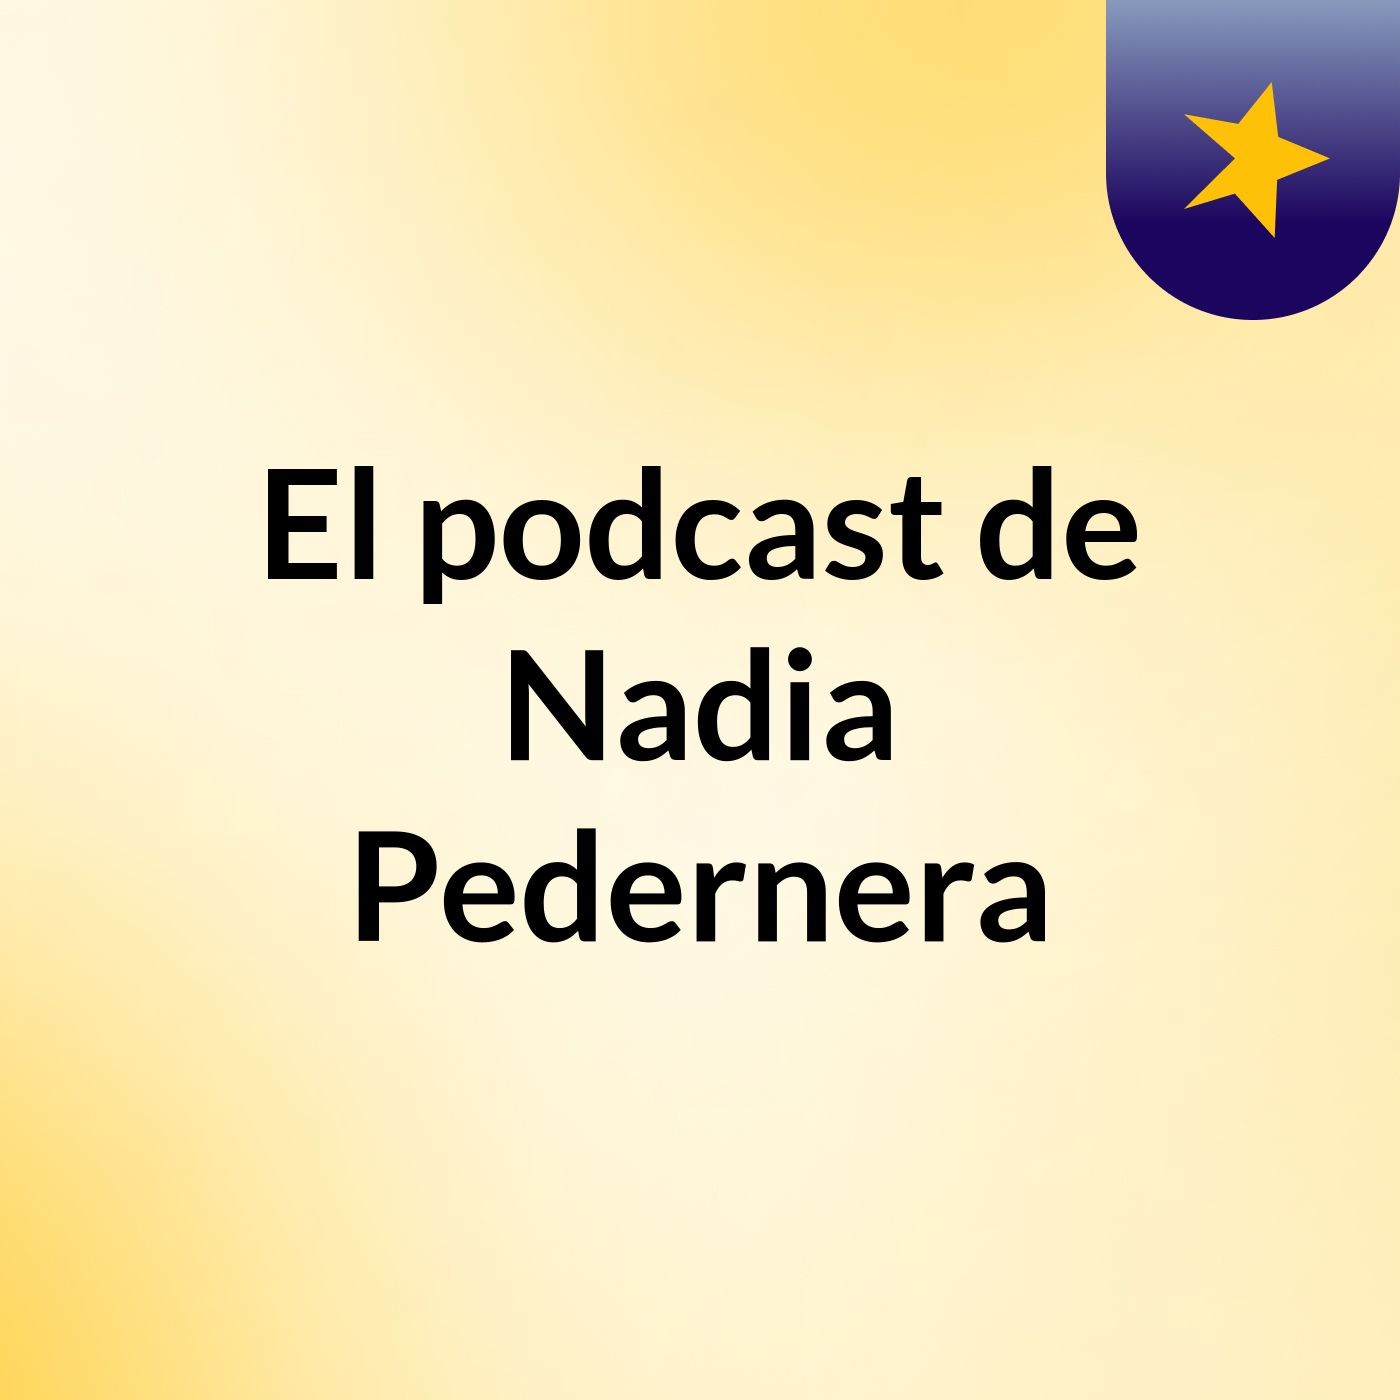 Episodio 23 - El podcast de Nadia Pedernera